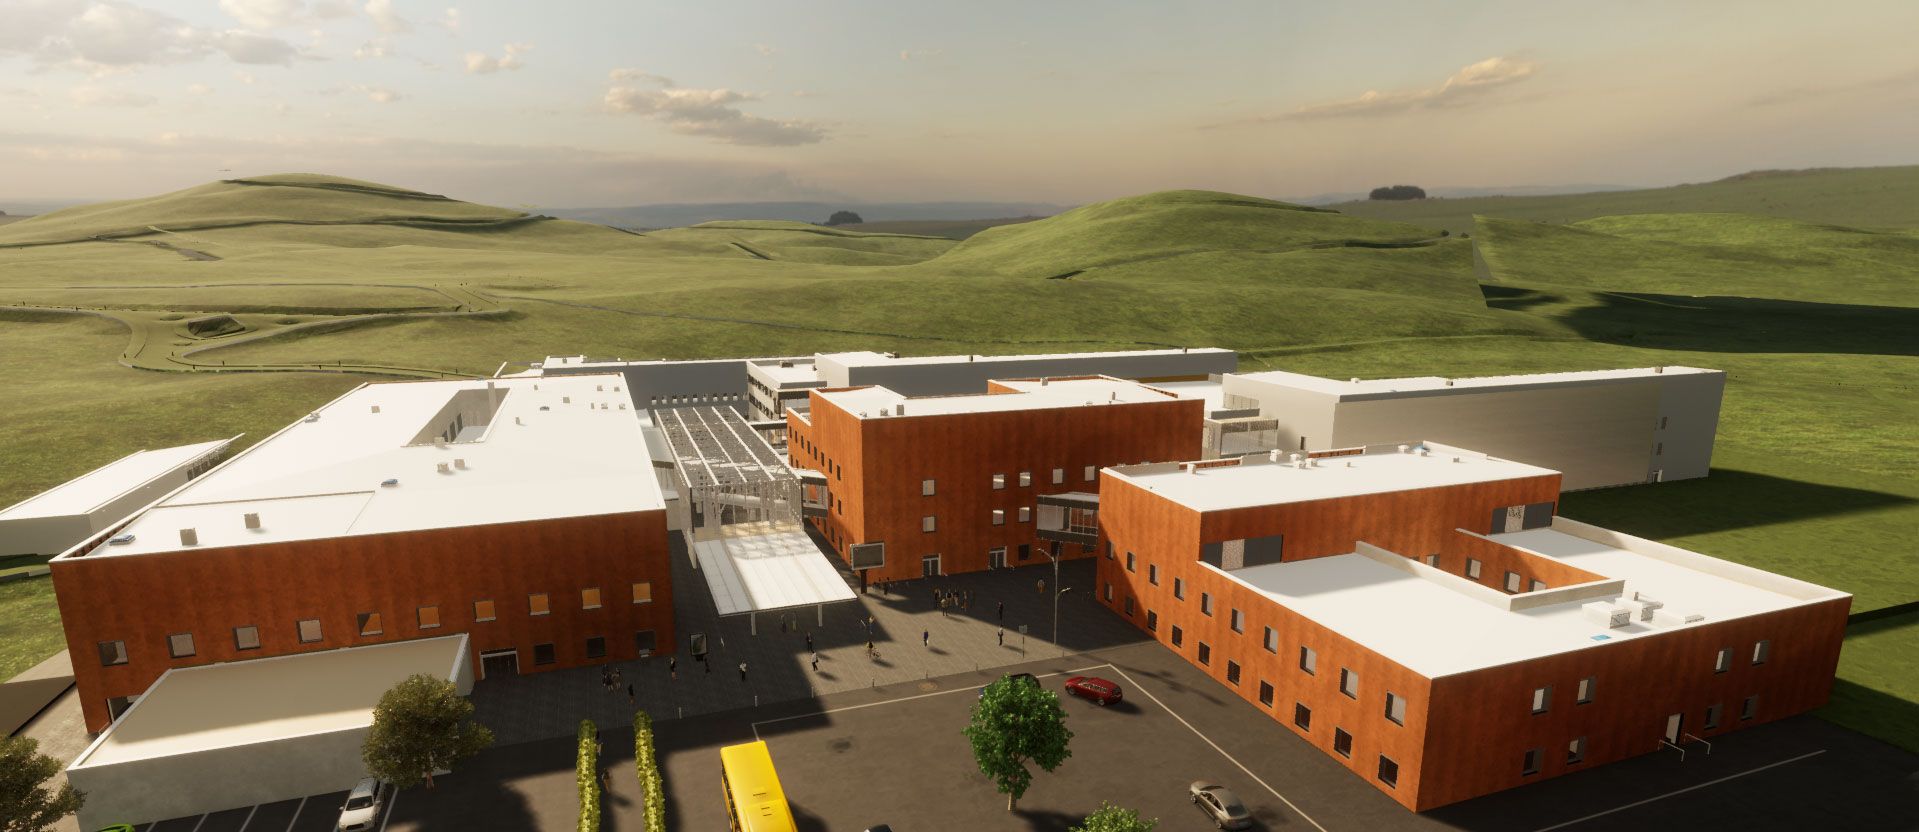 Nuovo ospedale di Fermo - image 6